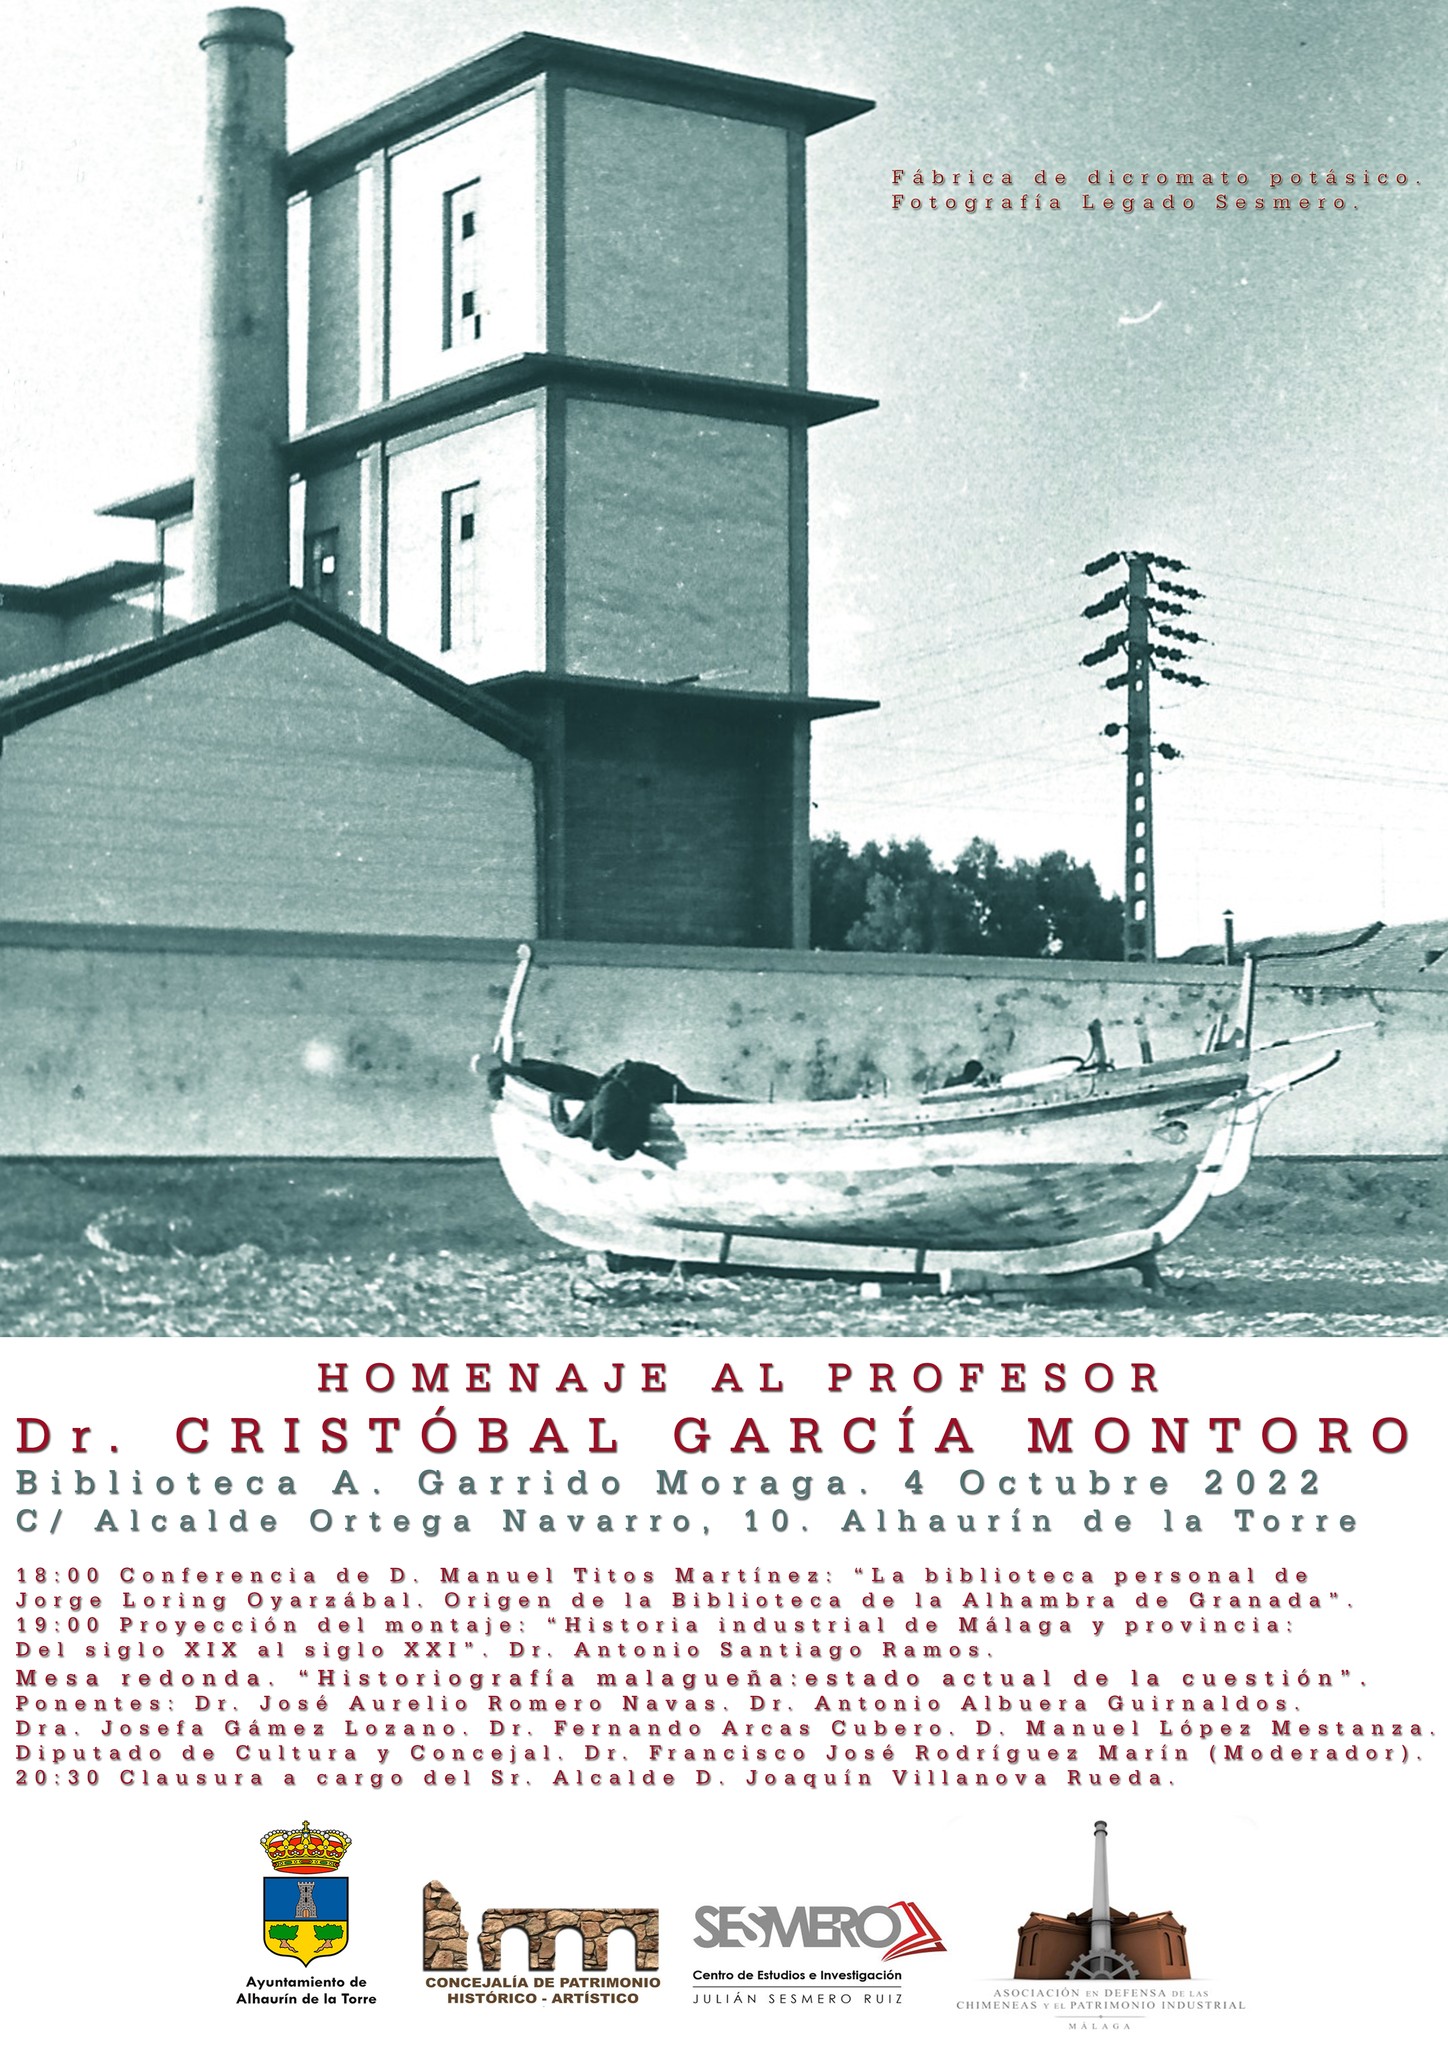 Homenaje al profesor García Montoro con mesa redonda y conferencia